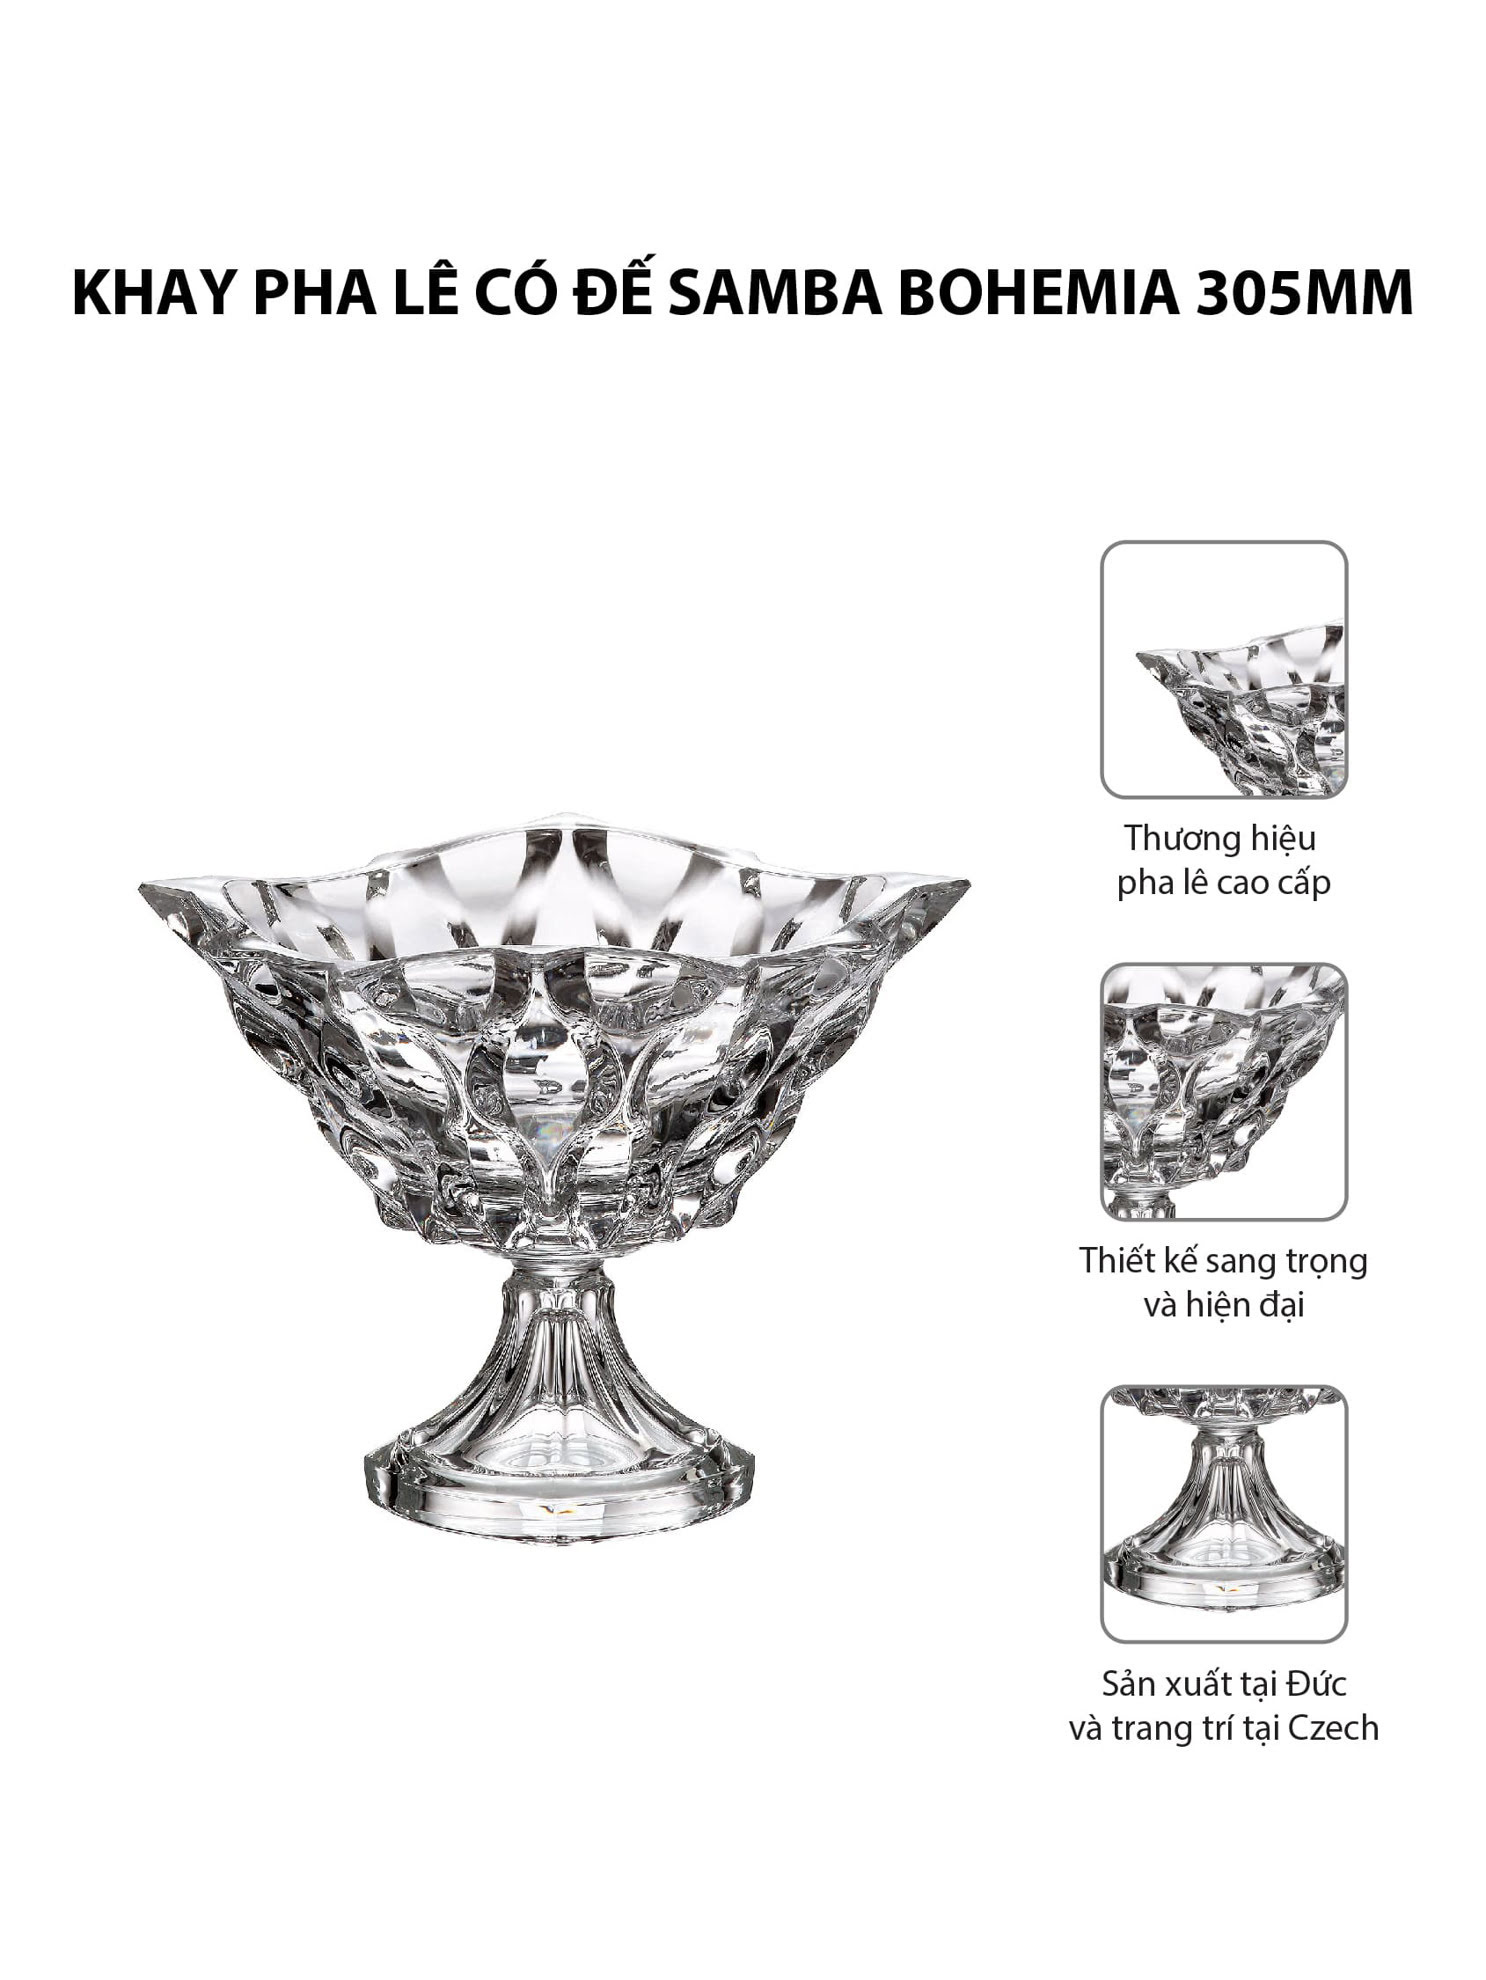 Khay pha lê có đế Samba Bohemia 305mm